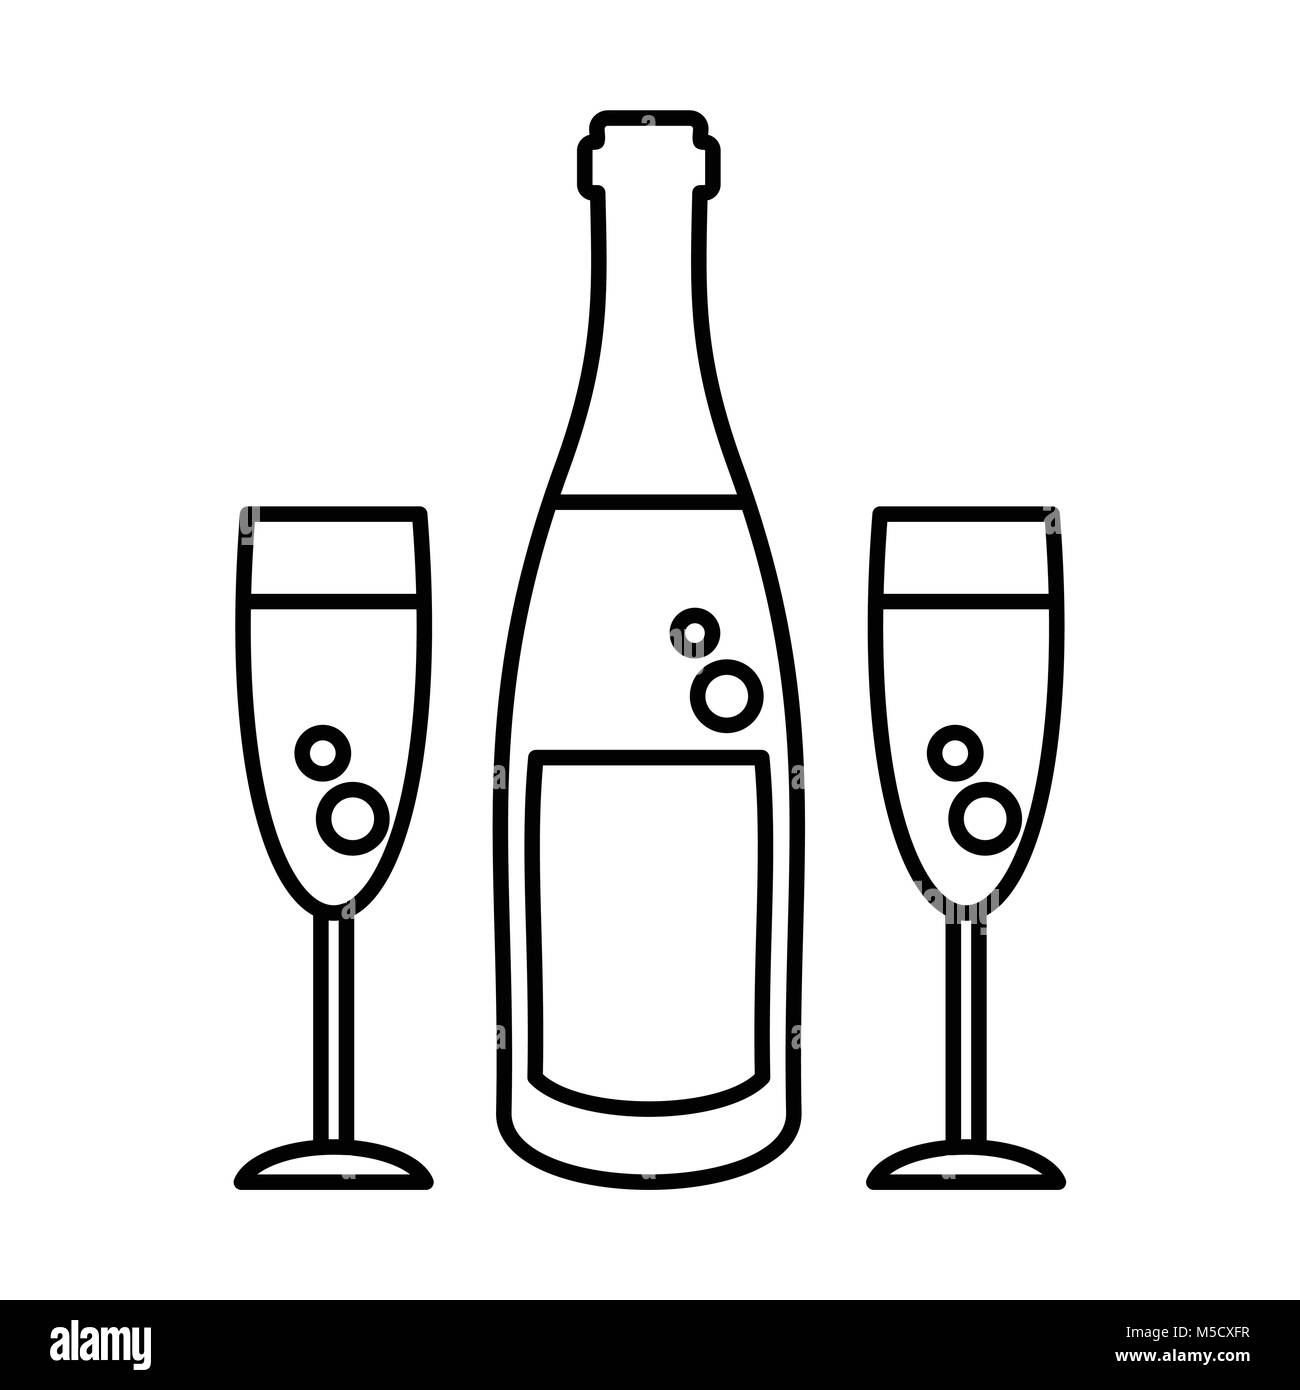 champagne bottle glasses Stock Vector